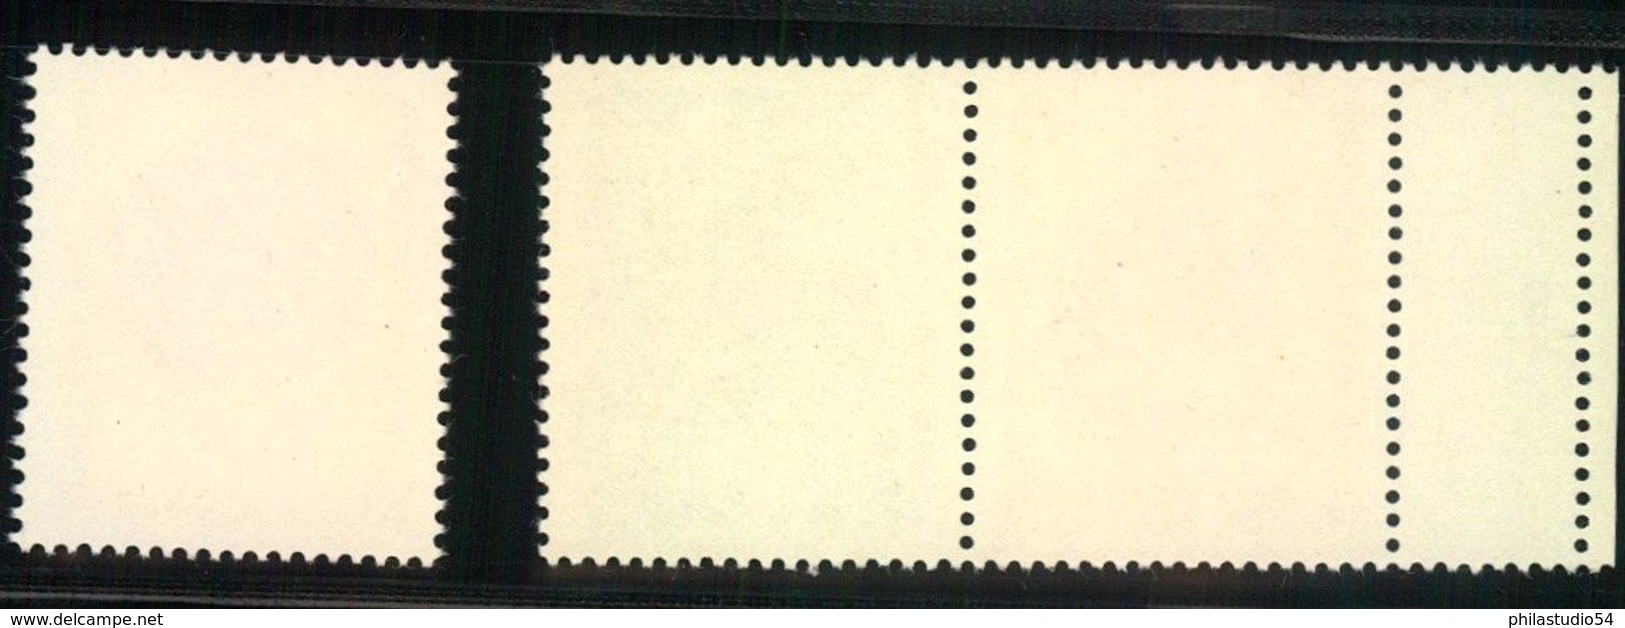 1969, Lausitzer Volkskunst, Zdr 10 Und 50 Pfg. Postfrisch Mit Leefeld Links Und 20 Pfg.Einzelmarke - Unused Stamps